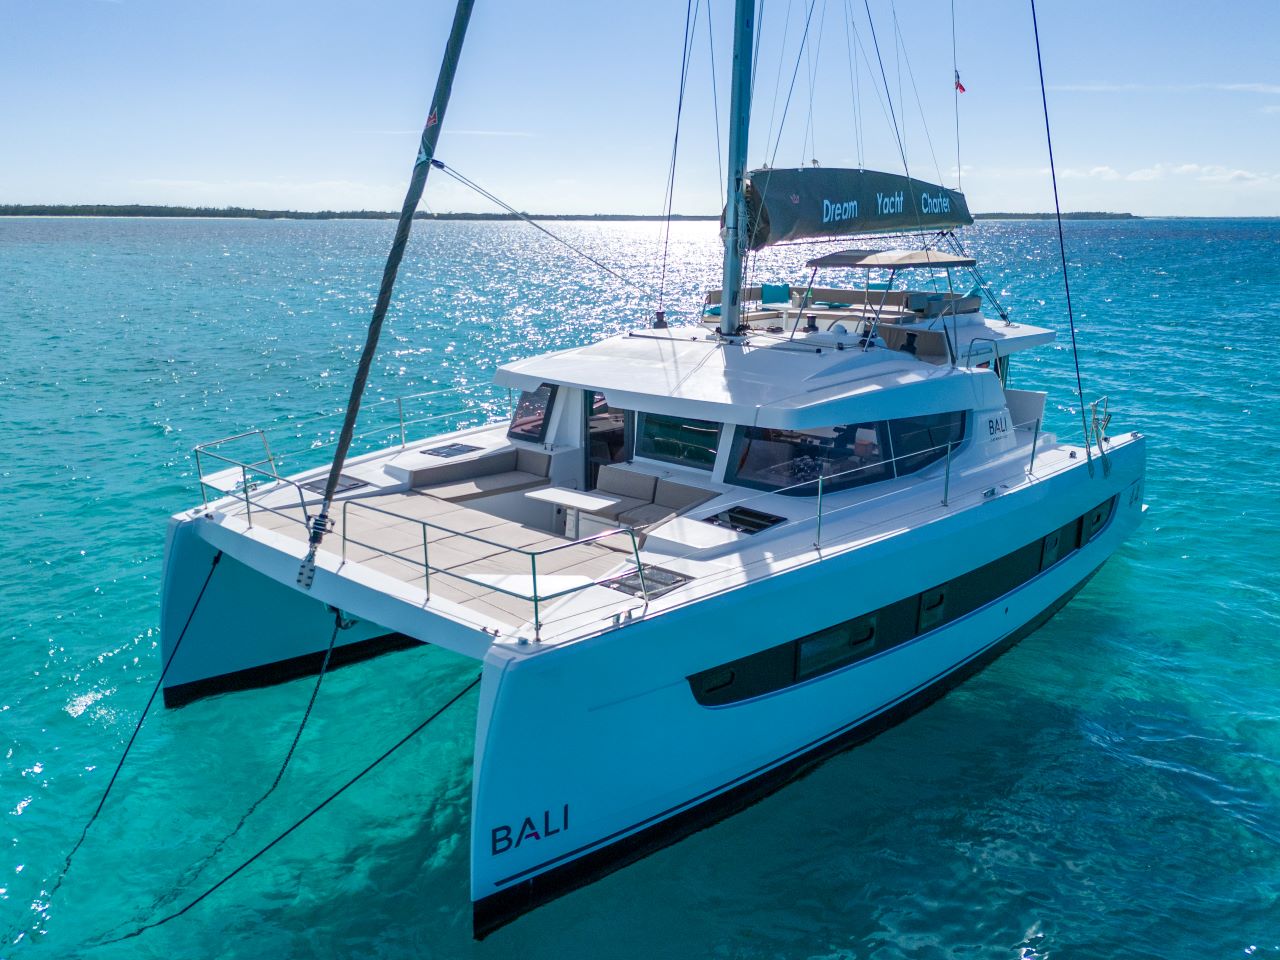 SAGA Bareboat Charter in Bahamas - Nassau